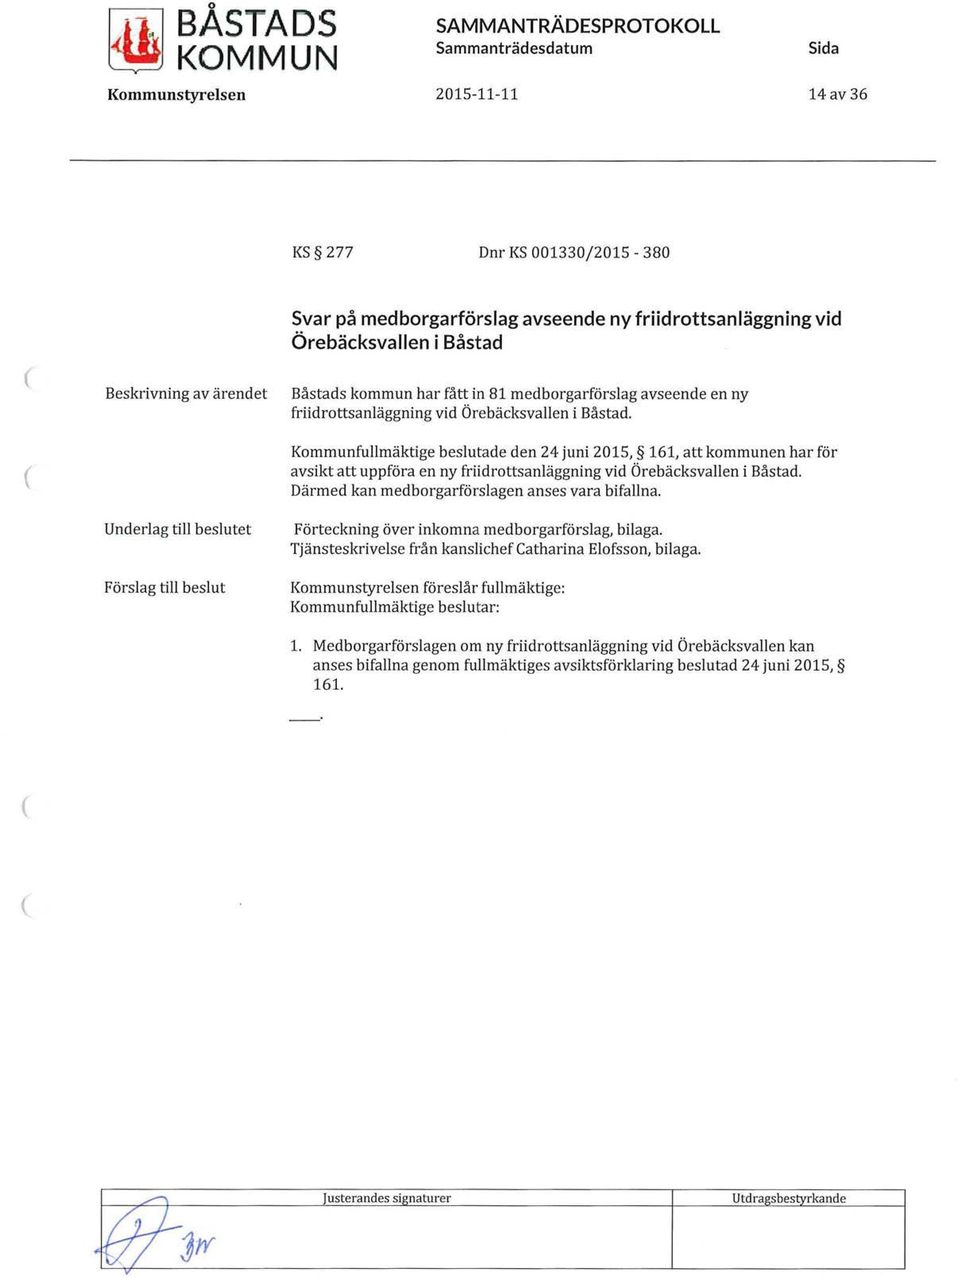 Kommunfullmäktige beslutade den 24 juni 2015, 161, att kommunen har för avsikt att uppföra en ny friidrottsanläggning vid Örebäcksvallen i Båstad. Därmed kan medborgarförslagen anses vara bifallna.